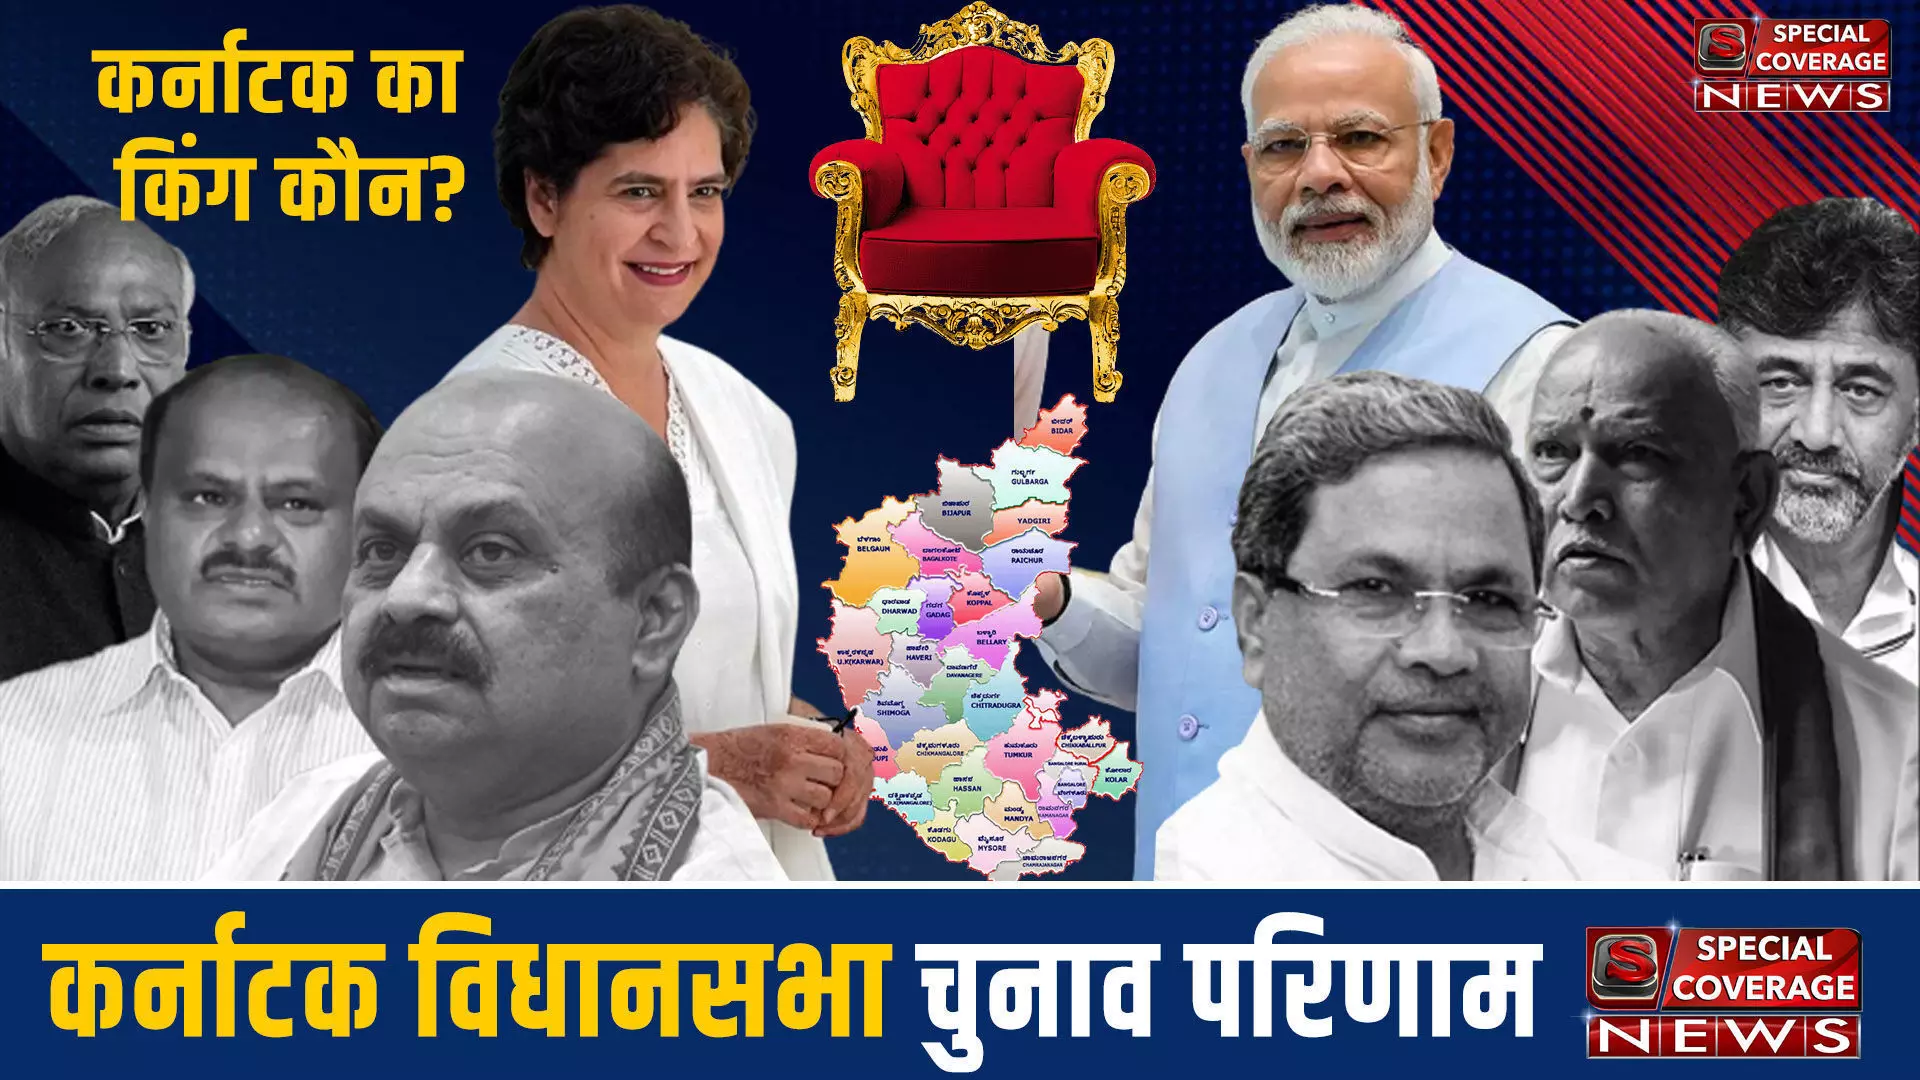 Karnataka Assembly Election 2023: कर्नाटक के गुलबर्गा जिले की विधानसभा सीट के चुनाव परिणाम 2023